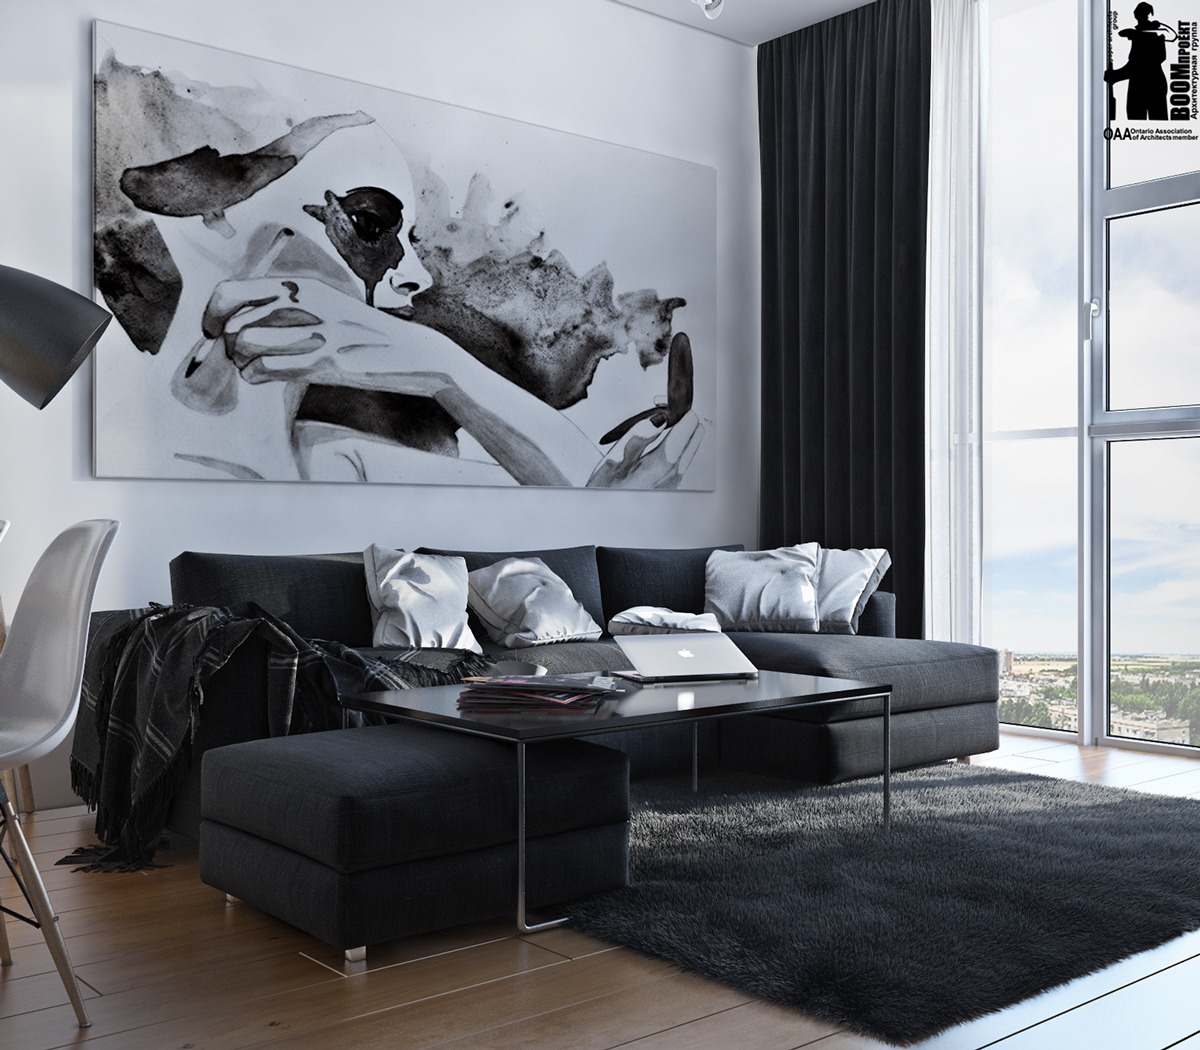 Black and white interior design idea "width =" 1200 "height =" 1050 "srcset =" https://mileray.com/wp-content/uploads/2016/04/artistic-black-and-white-interior-design . jpg 1200w, https://mileray.com/wp-content/uploads/2016/04/artistic-black-and-white-interior-design-300x263.jpg 300w, https://mileray.com/wp-content/ Uploads / 2016/04 / artistic-black-white-interior-architecture-768x672.jpg 768w, https://mileray.com/wp-content/uploads/2016/04/artistic-black-and-white-interior -design-1024x896 .jpg 1024w, https://mileray.com/wp-content/uploads/2016/04/artistic-black-and-white-interior-design-696x609.jpg 696w, https://mileray.com / wp-content /uploads/2016/04/artistic-black-and-white-interior-design-1068x935.jpg 1068w, https://mileray.com/wp-content/uploads/2016/04/artistic-black- und-weiß- Innenarchitektur-480x420.jpg 480w "Sizes =" (maximum width: 1200px) 100vw, 1200px